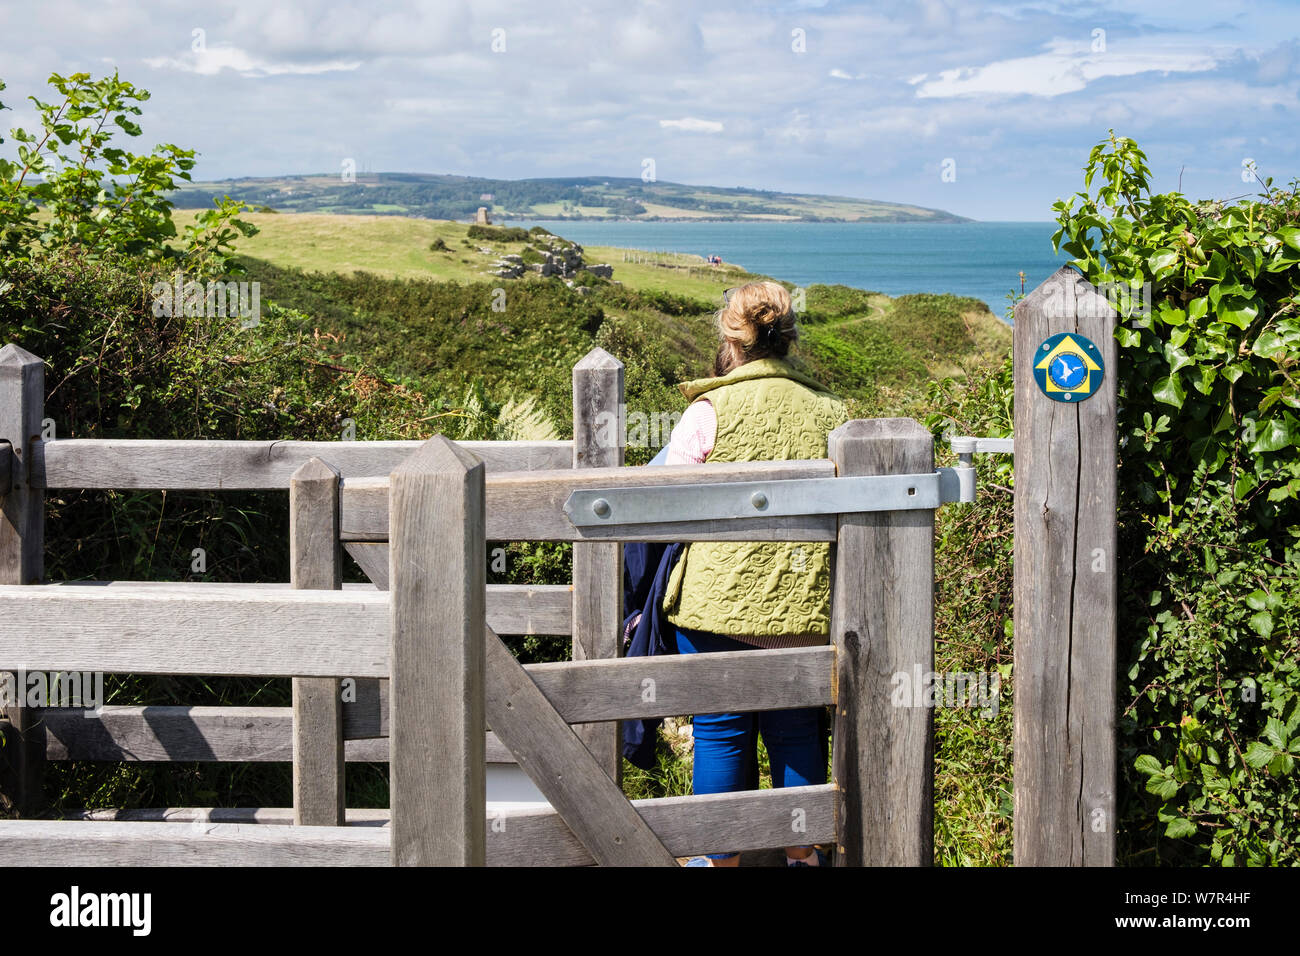 Walker de la randonnée à travers un kissing gate sur Galles chemin côtier avec vue à l'autre. Llangefni, Ile d'Anglesey, au Pays de Galles, Royaume-Uni, Angleterre Banque D'Images